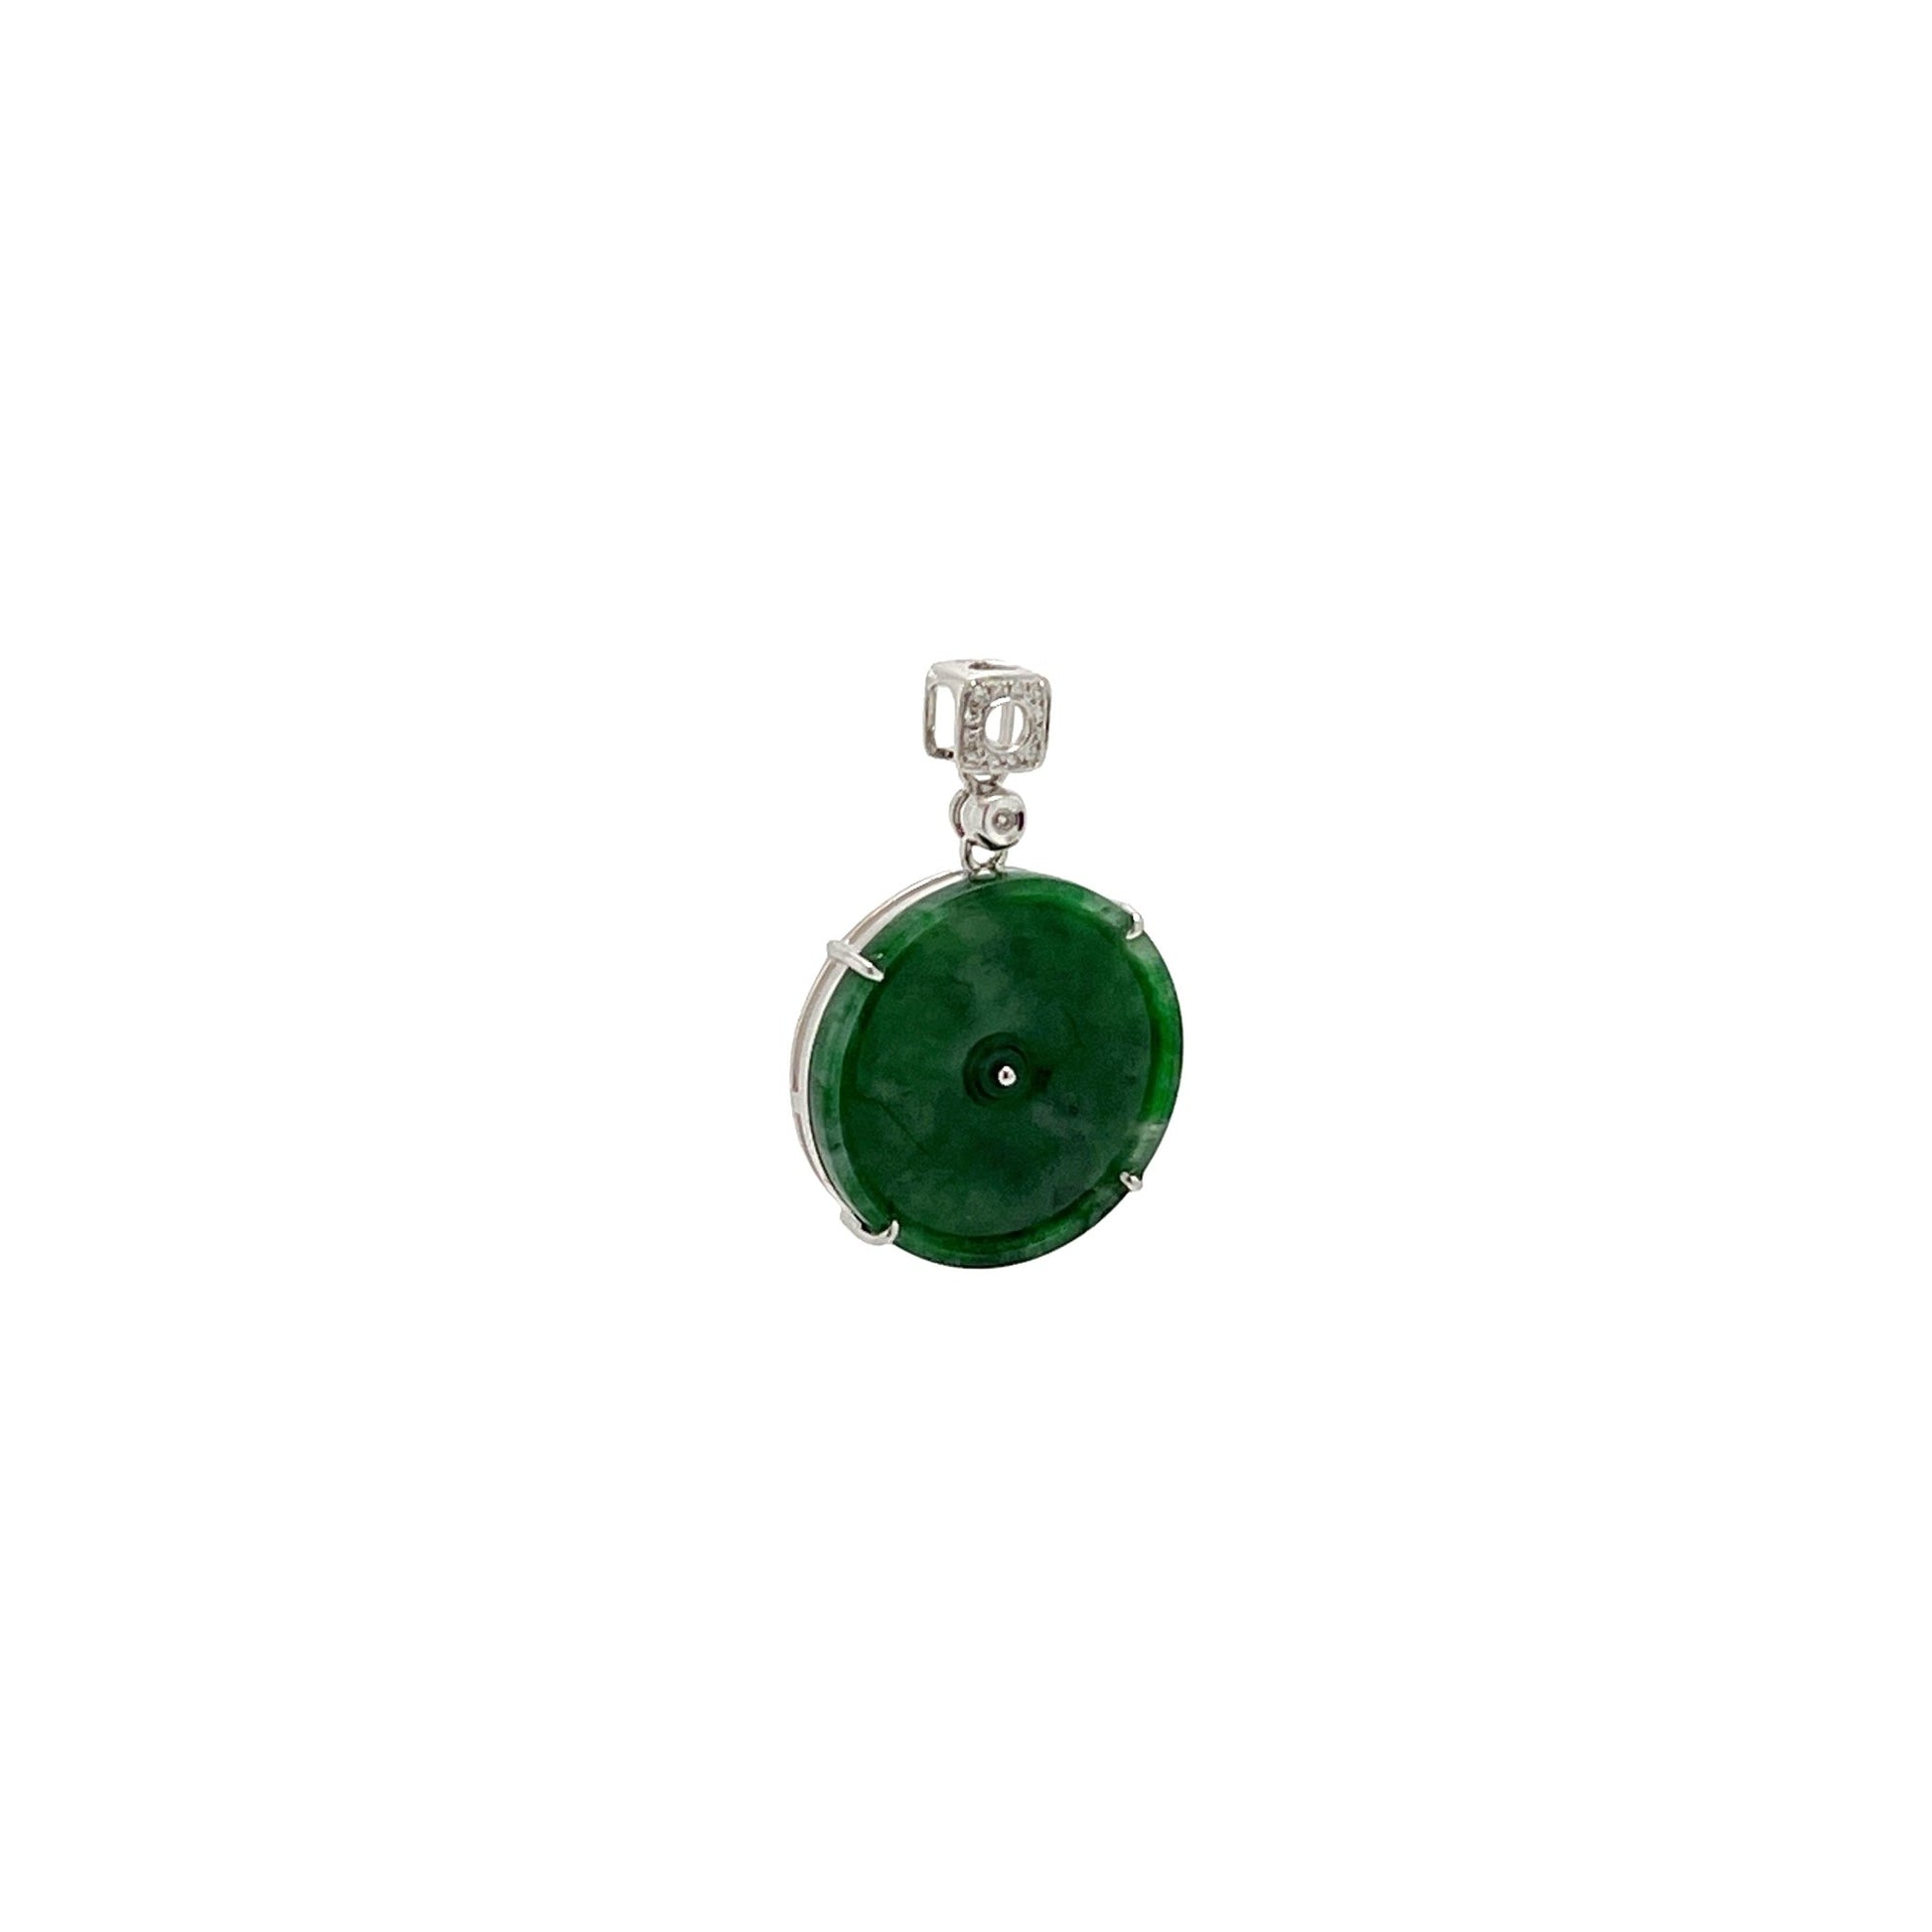 吊墜 - 老坑花青鮮綠色圓形懷古天然翡翠配鑽石18K白金吊墜 - 雅玉珠寶